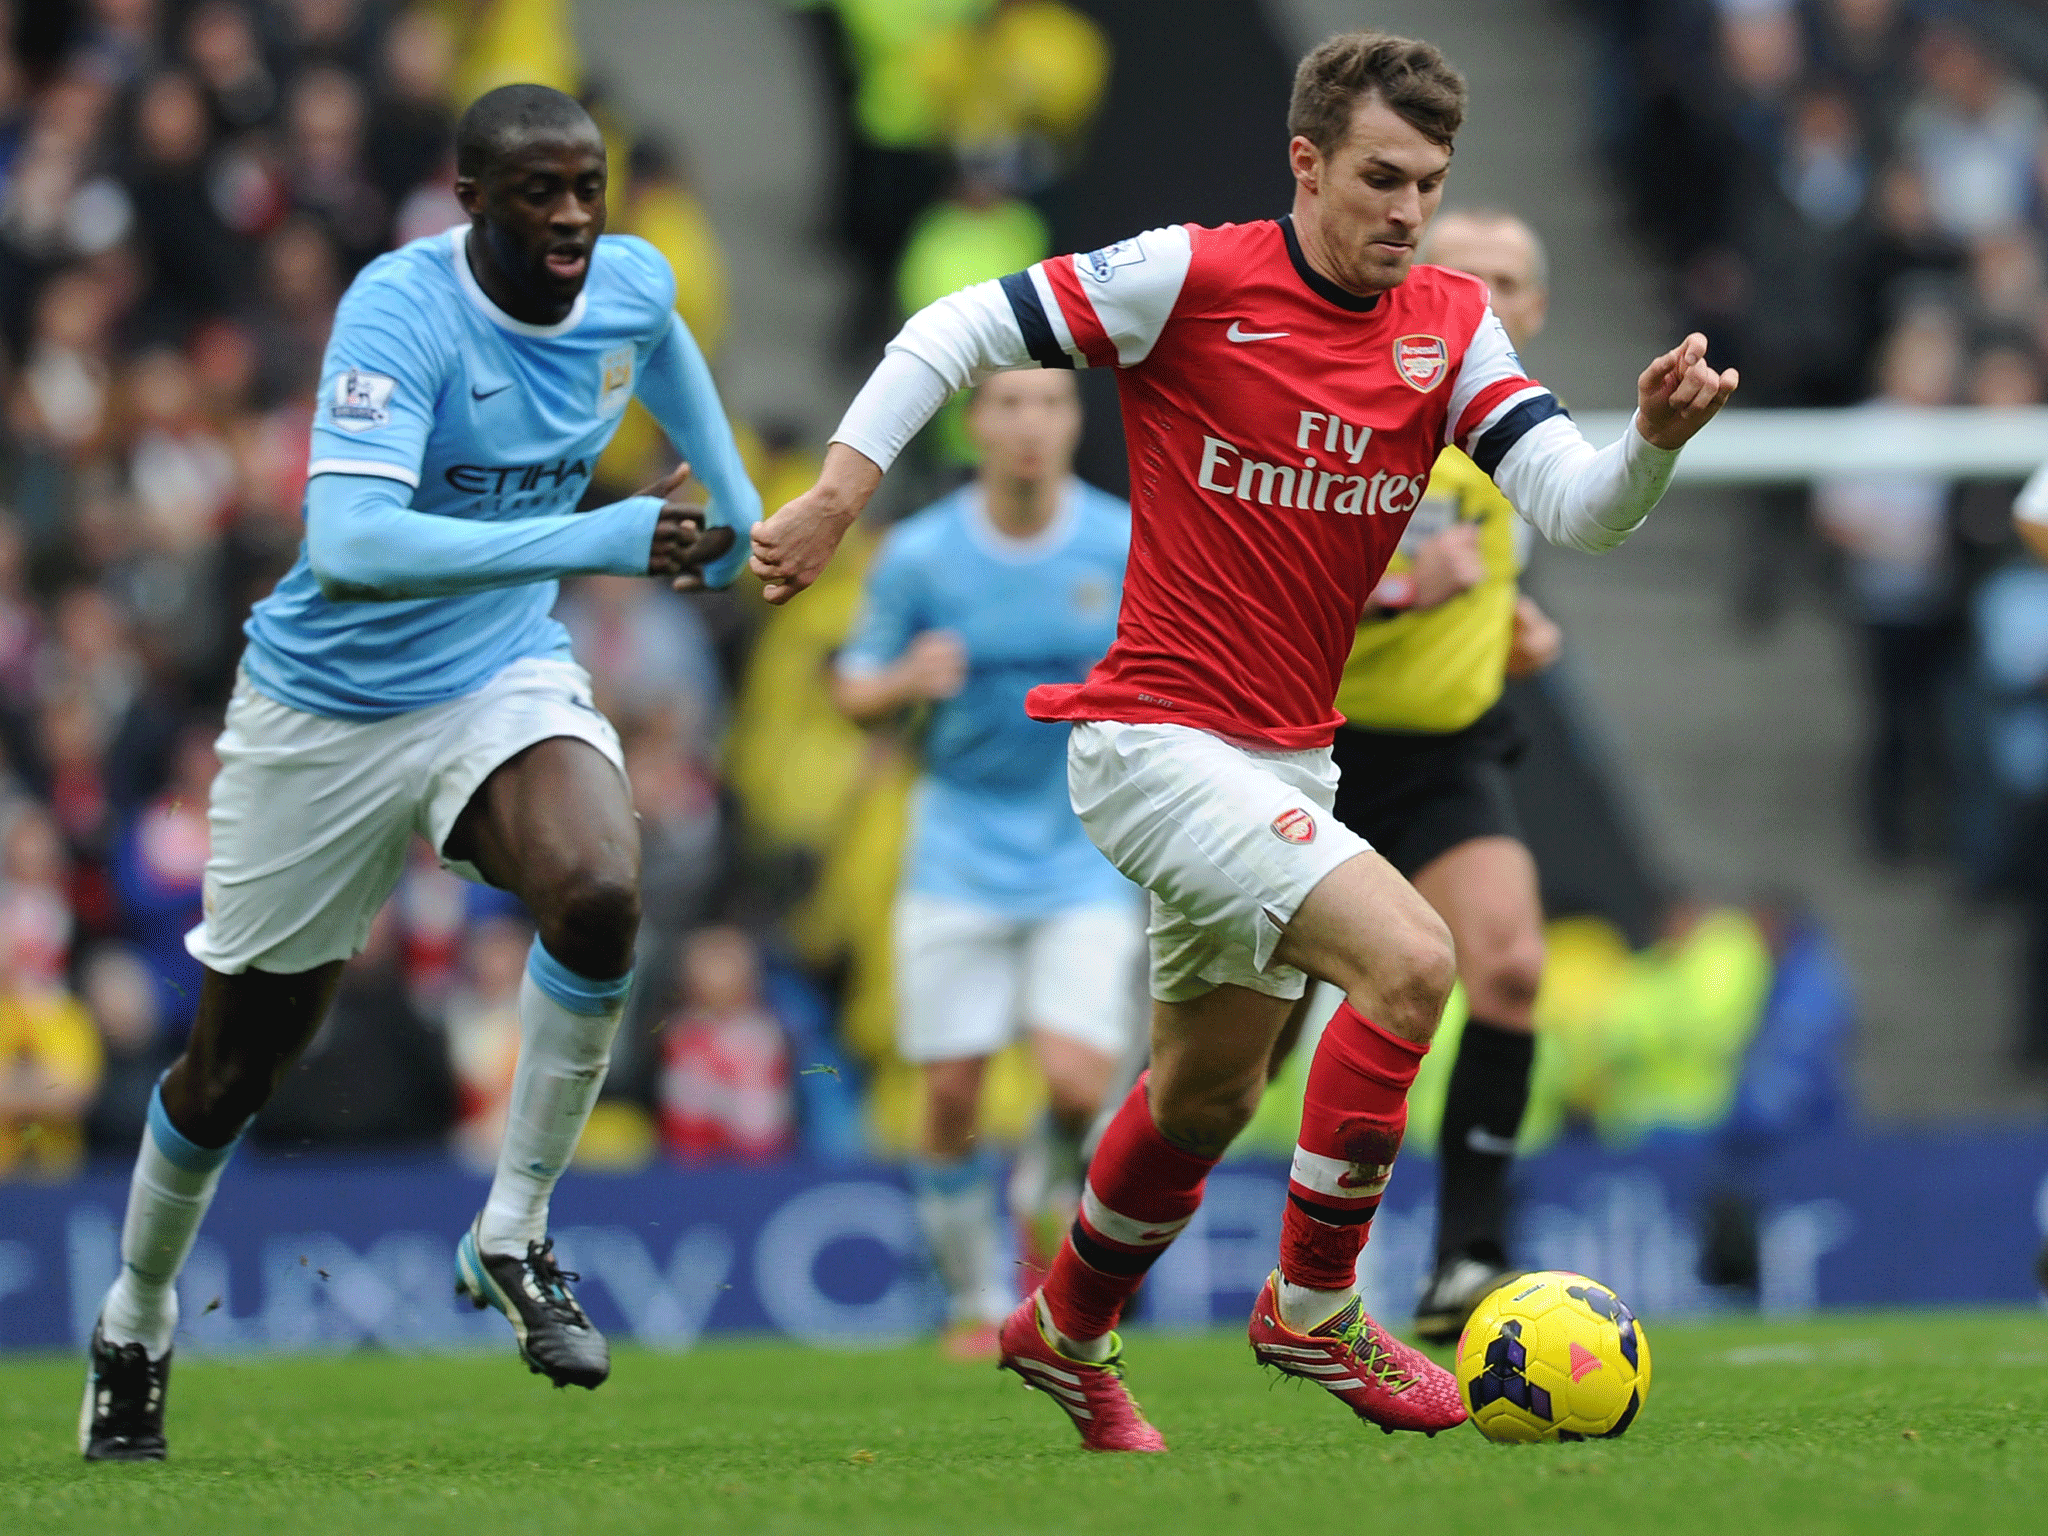 Aaron Ramsey runs past Manchester City midfielder Yaya Toure